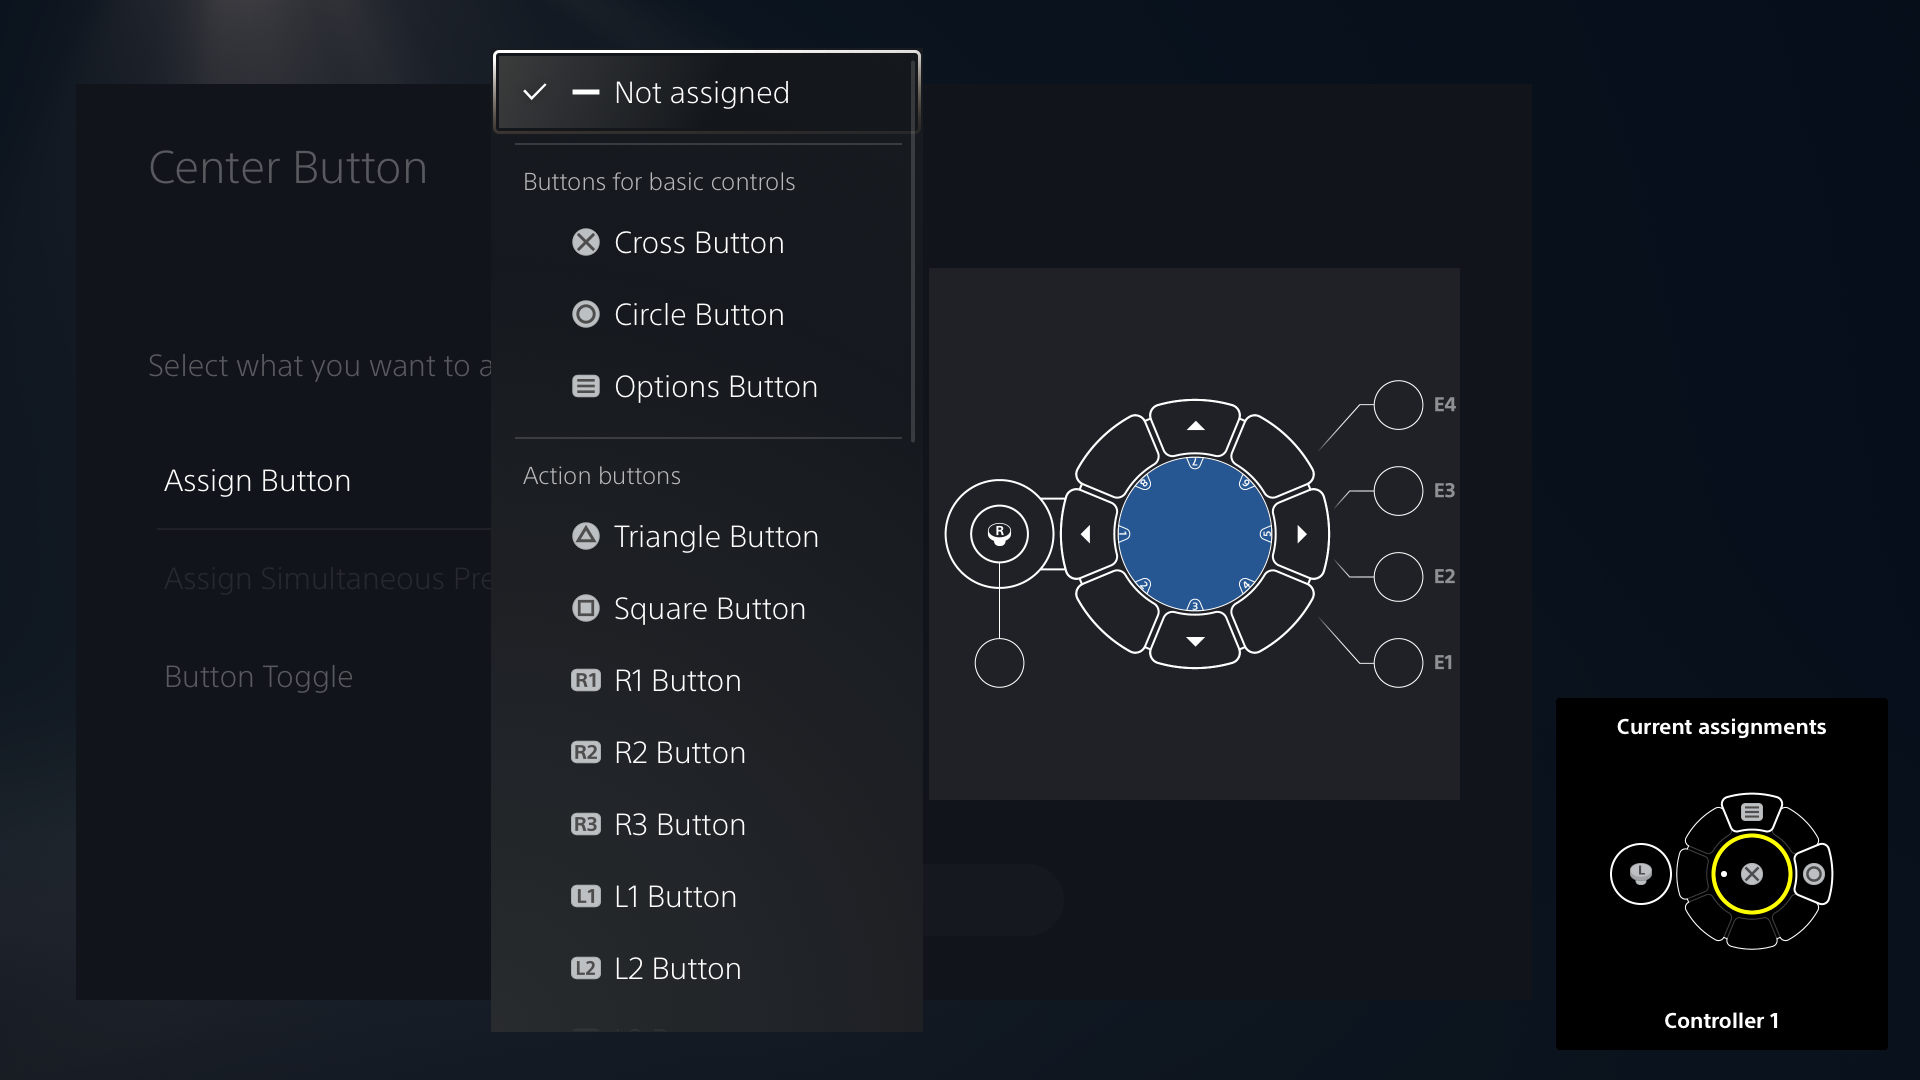  "Imagen de la interfaz de usuario del mando Access que muestra la lista de botones asignables"